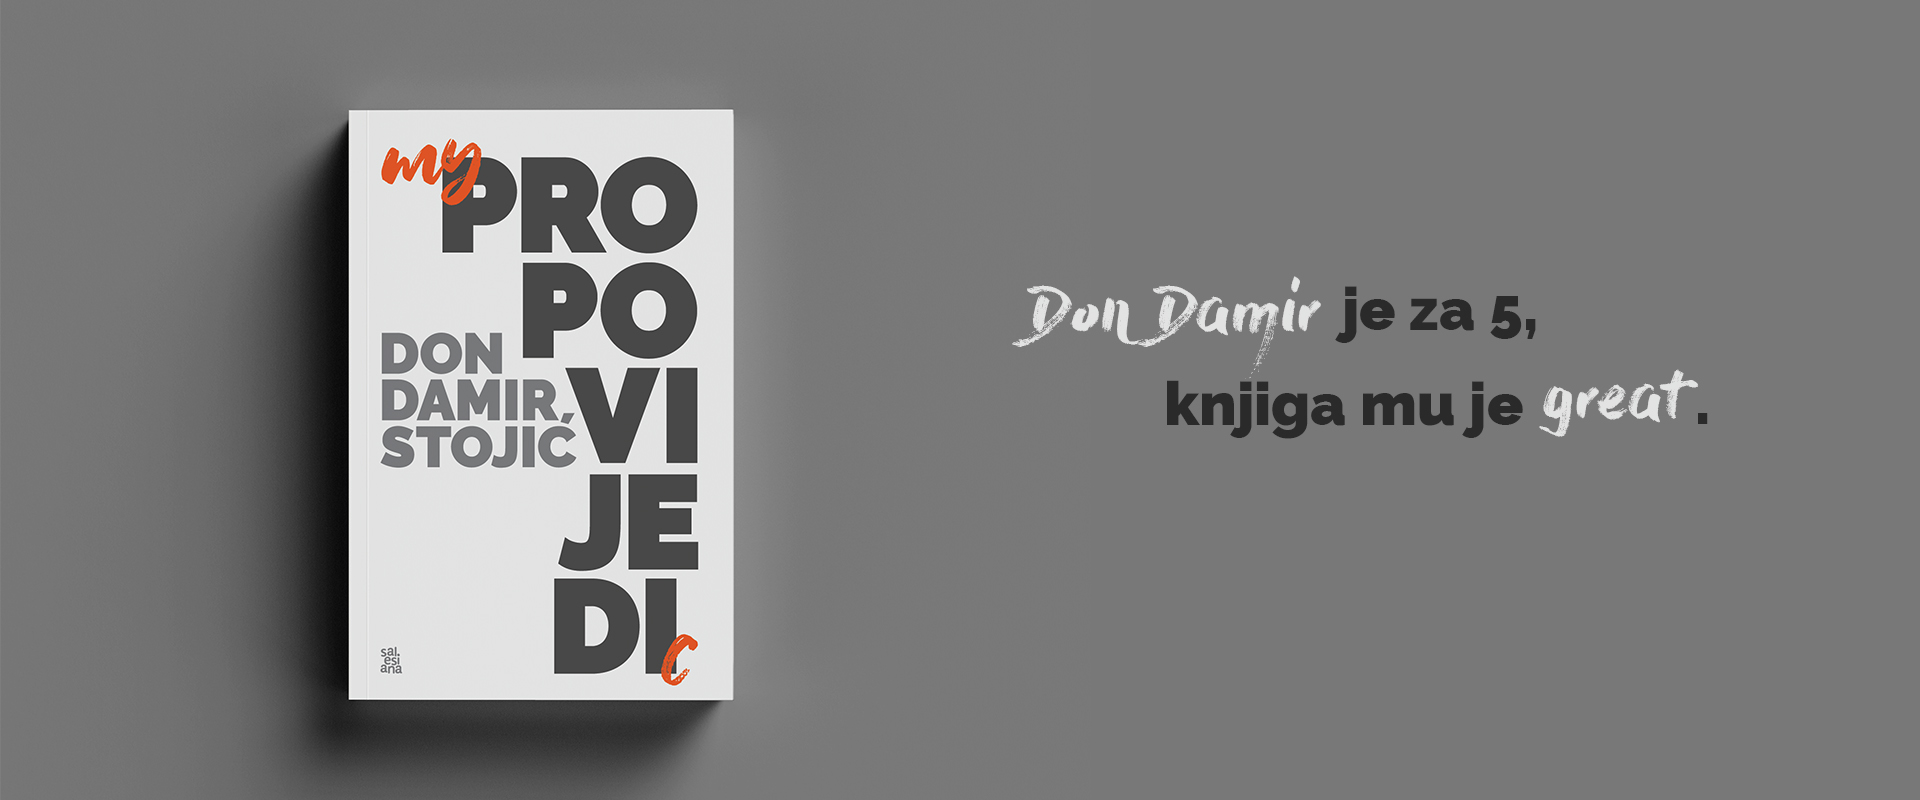 Predstavljanje knjige: My propovijedi, godina C, don Damir Stojić